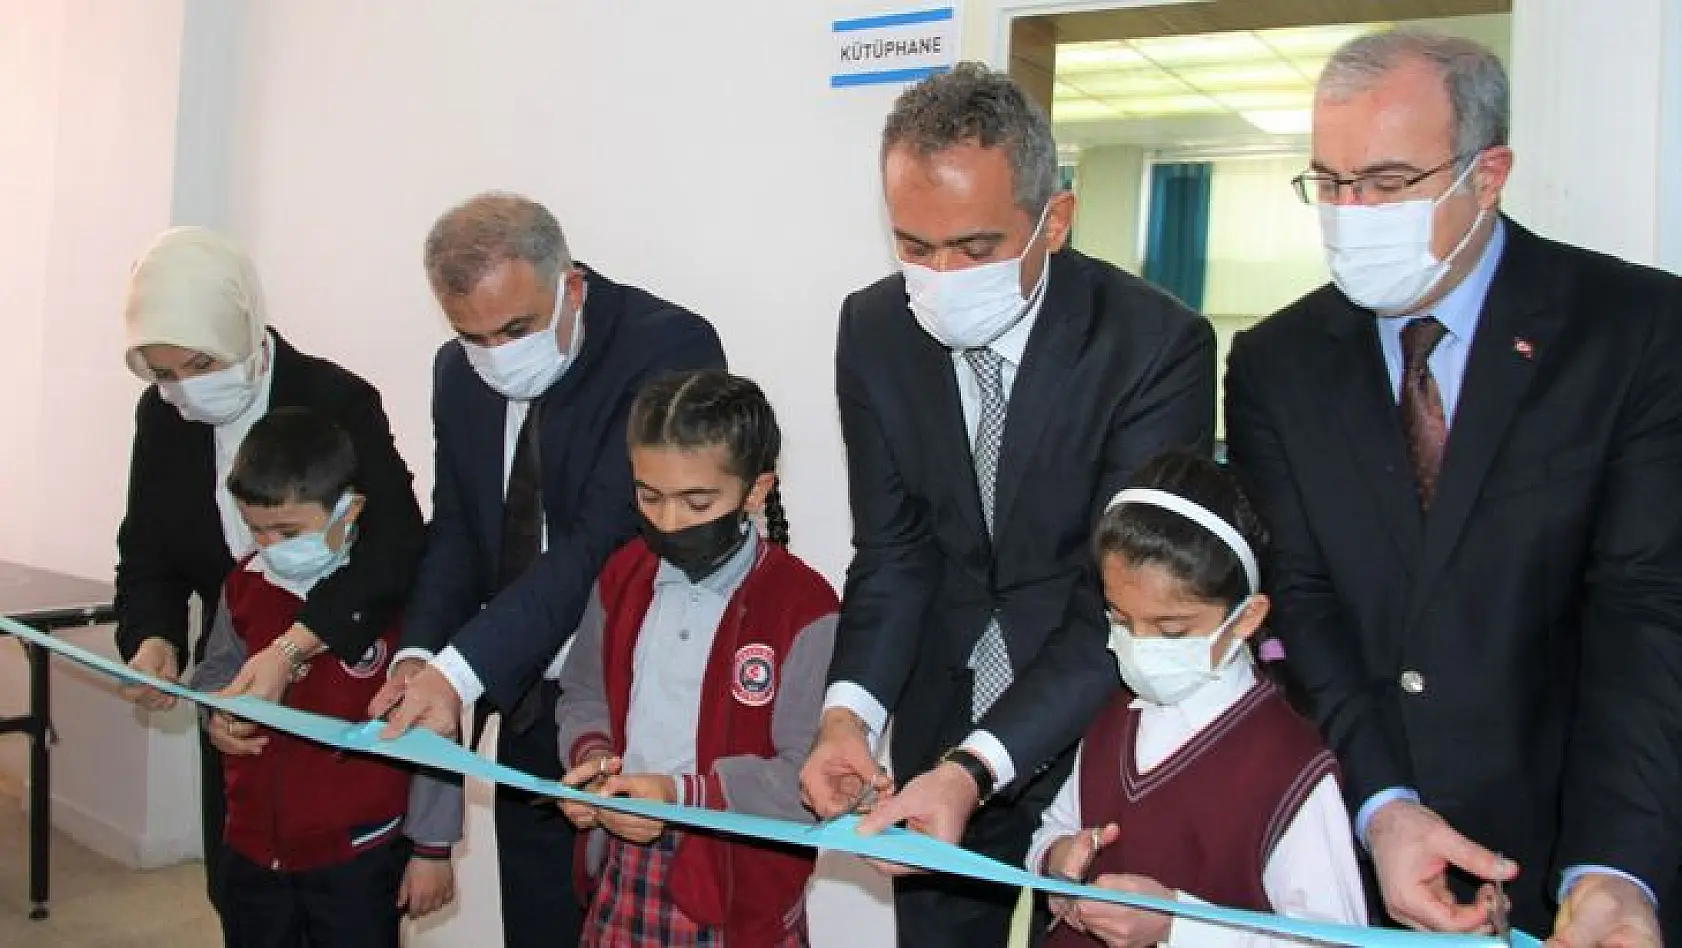 Milli Eğitim Bakanı Özer, Elazığ'da Kütüphanenin Açılışını Gerçekleştirdi